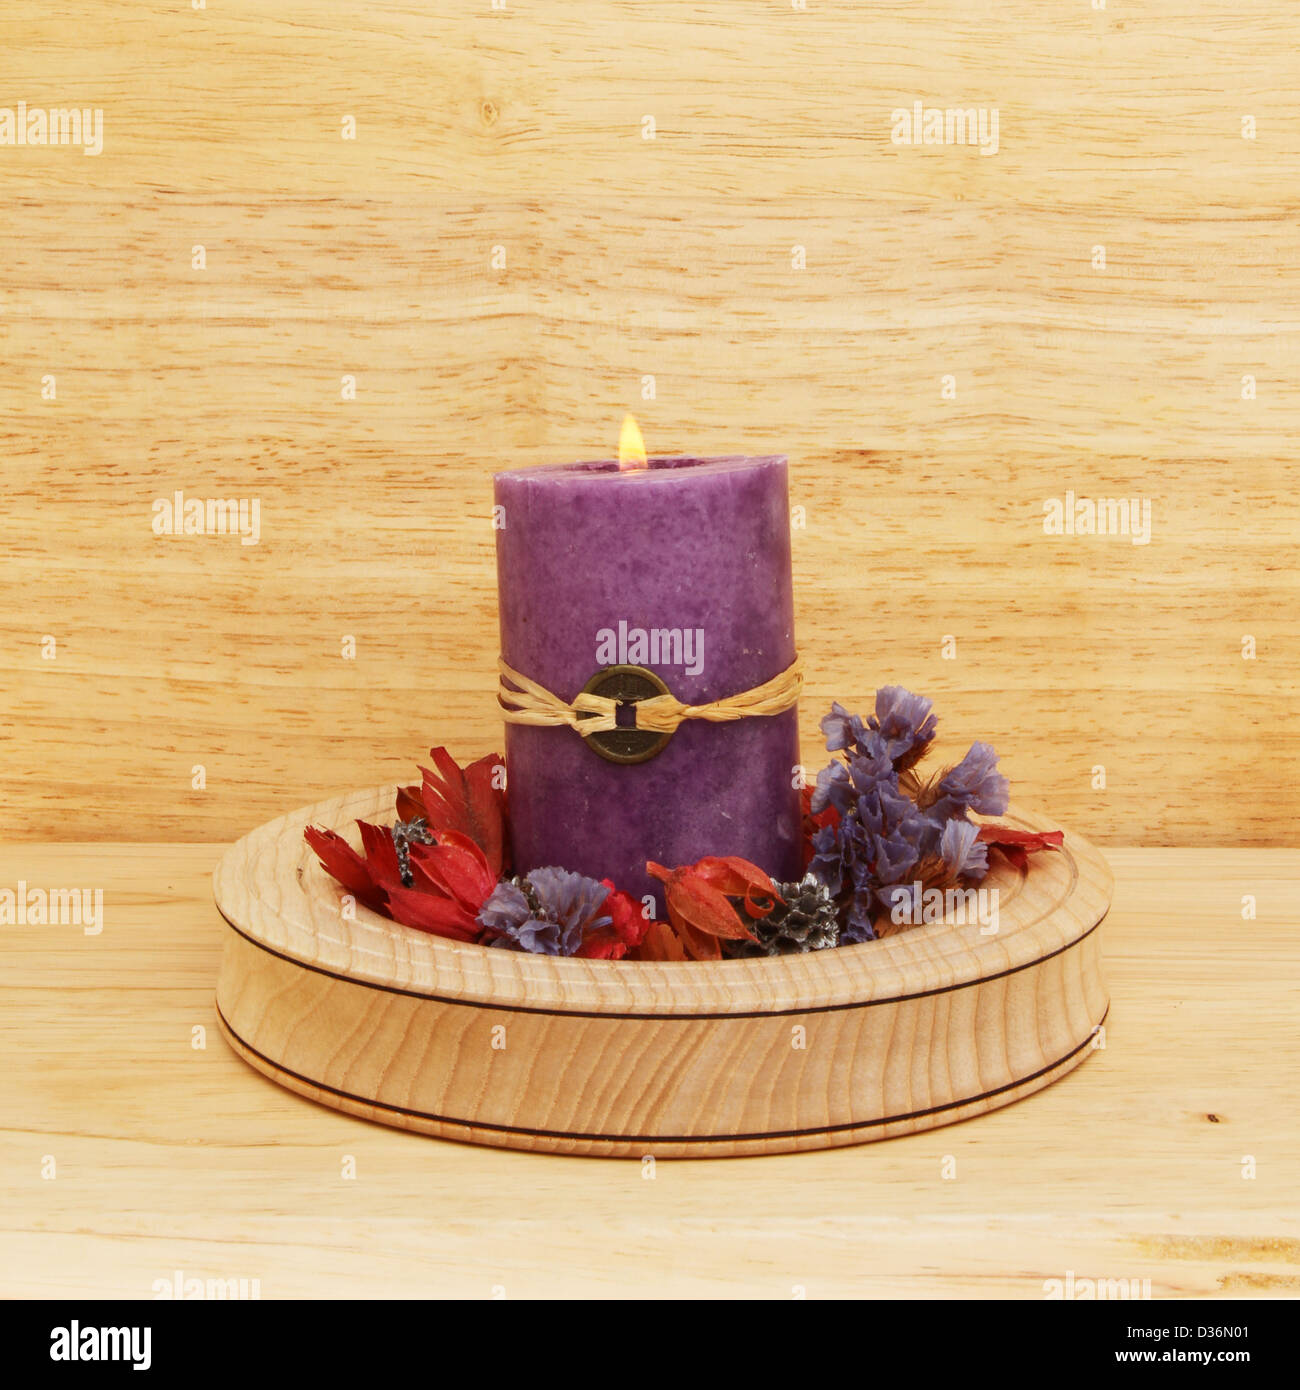 La masterizzazione di viola il Feng Shui candela con pot-pourri in una ciotola di legno Foto Stock